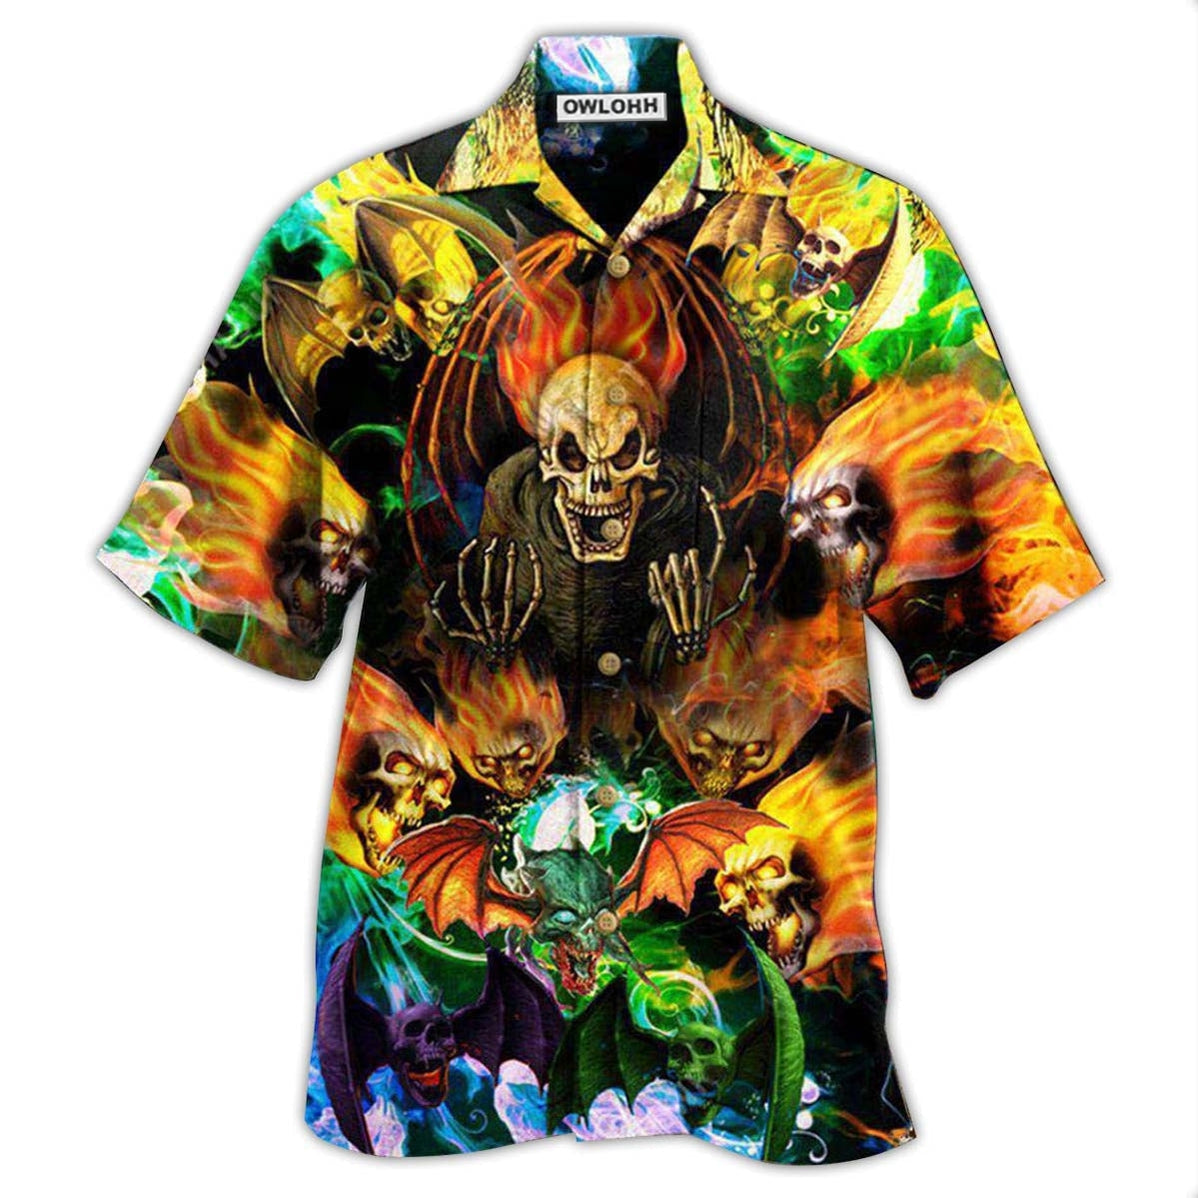 Hawaiian Shirt / Adults / S Skull With Bat Wings - Hawaiian Shirt - Owls Matrix LTD